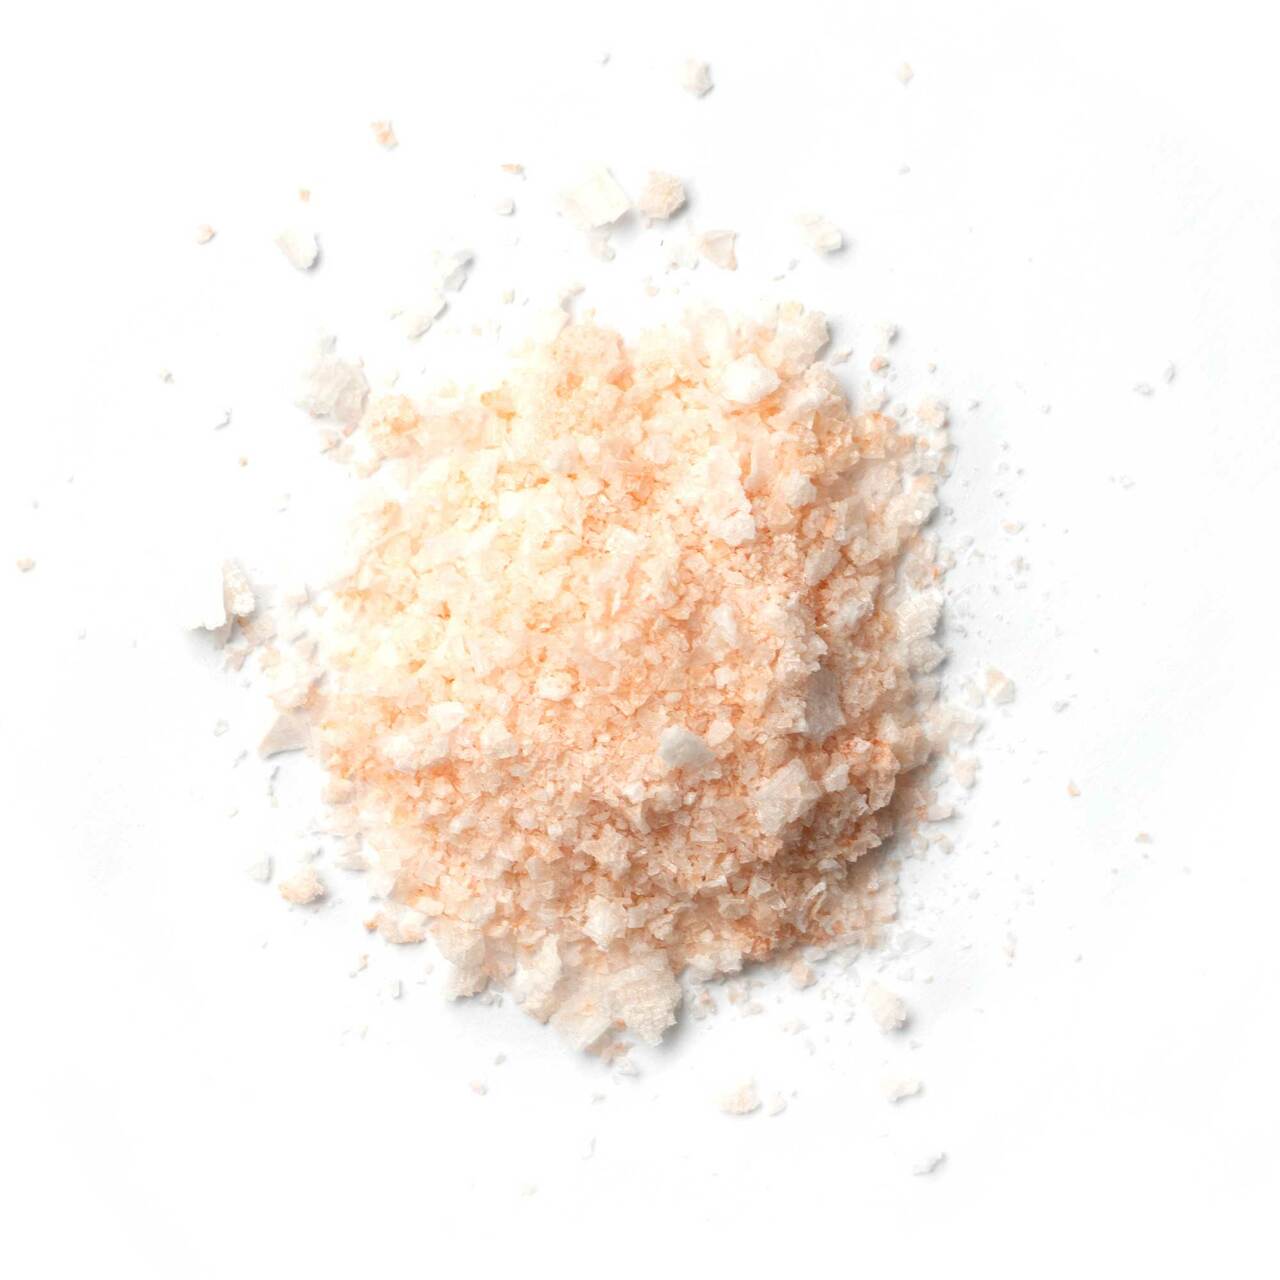 Spiceology Millennial Pink Flakey Salt from A Cook Named Matt